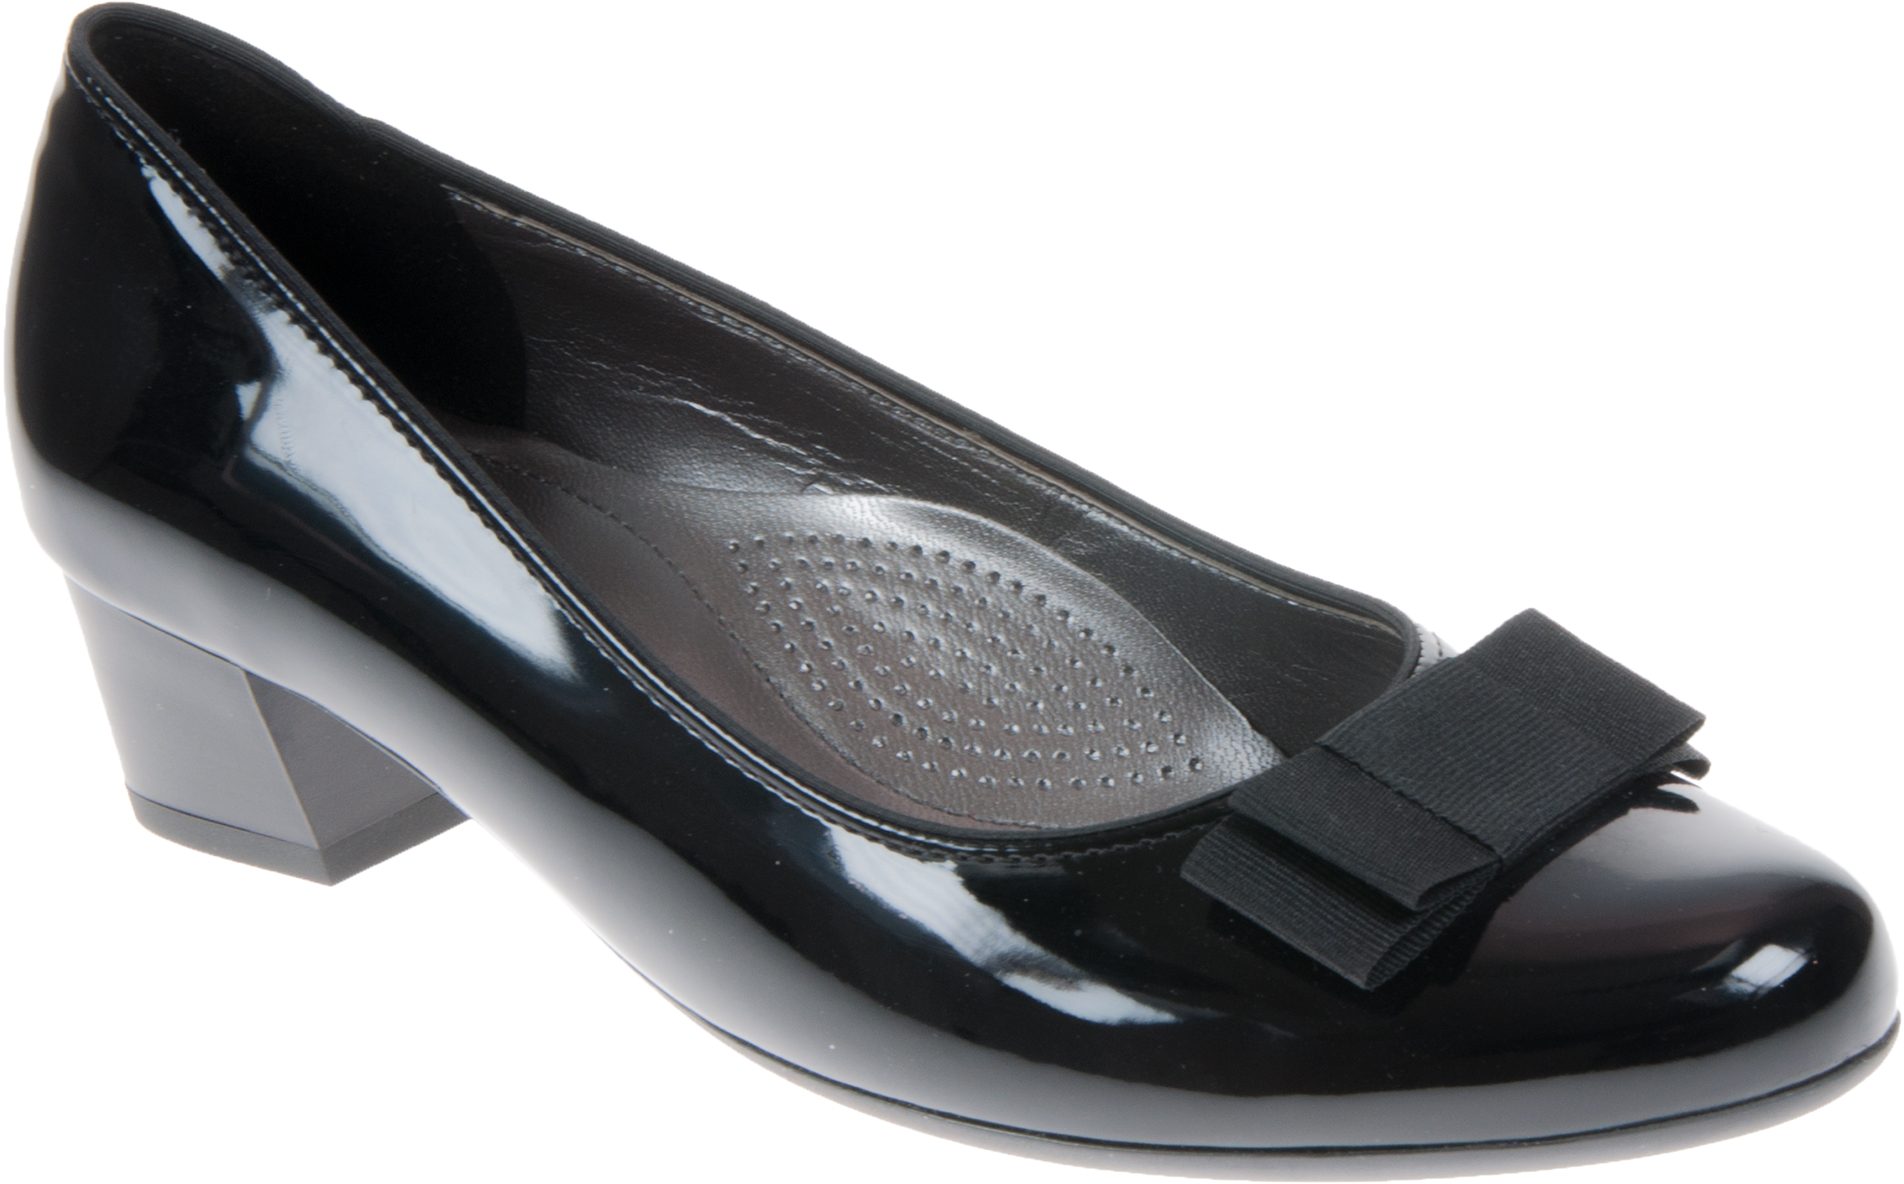 Ara Nizza Black Patent 08 Court Shoes - Humphries